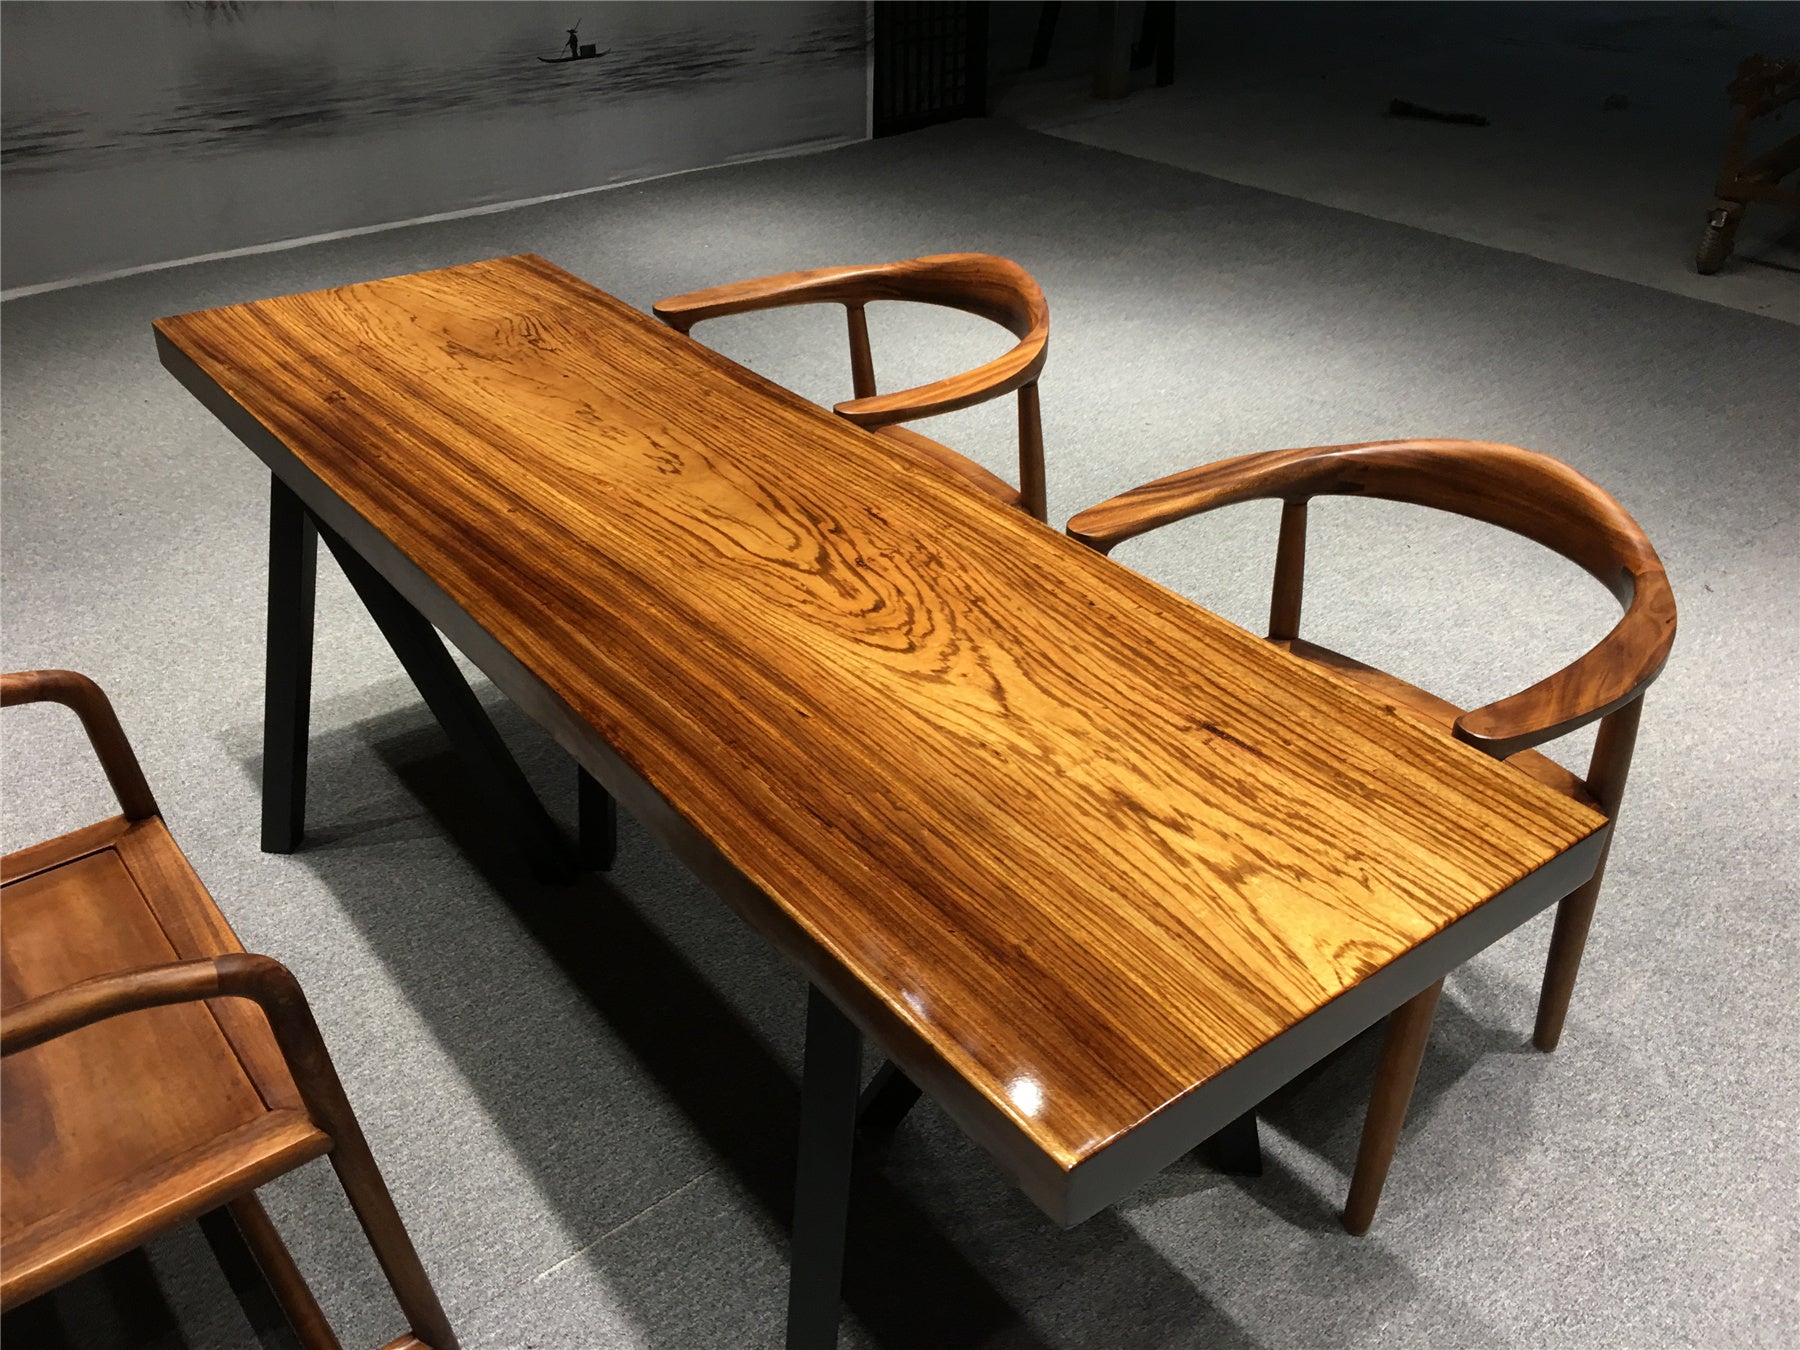 Zingana 木製テーブル、Zingana 木製ダイニング テーブル、木製スラブ テーブル トップ